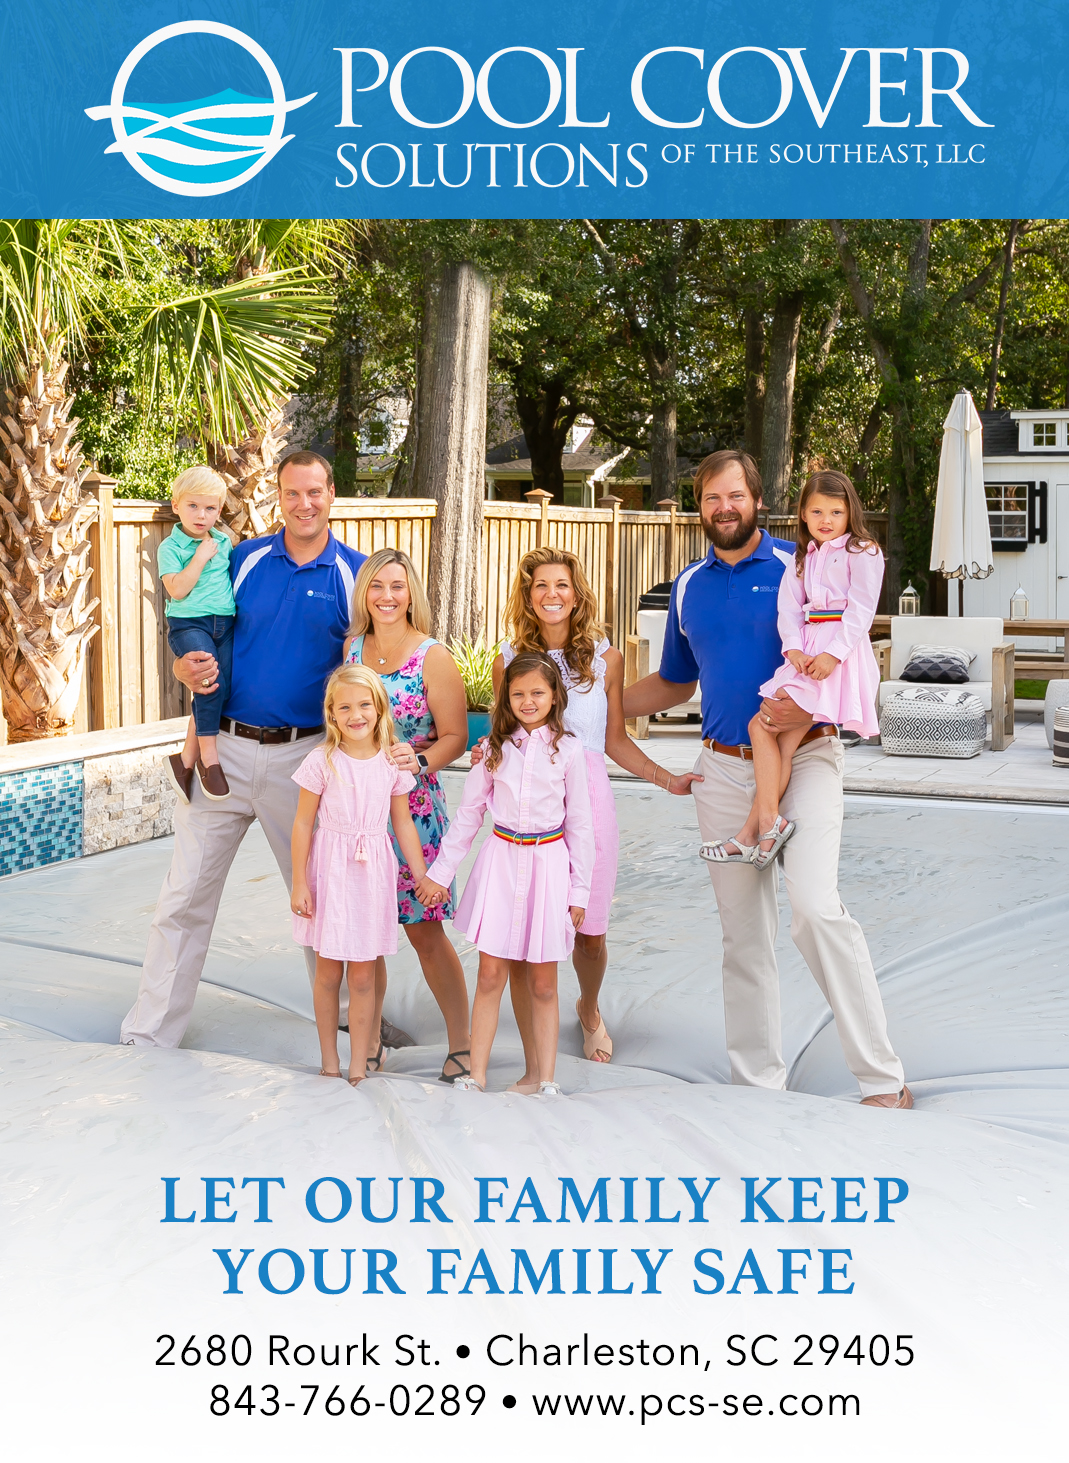 Windmueller Family on Pool Cover